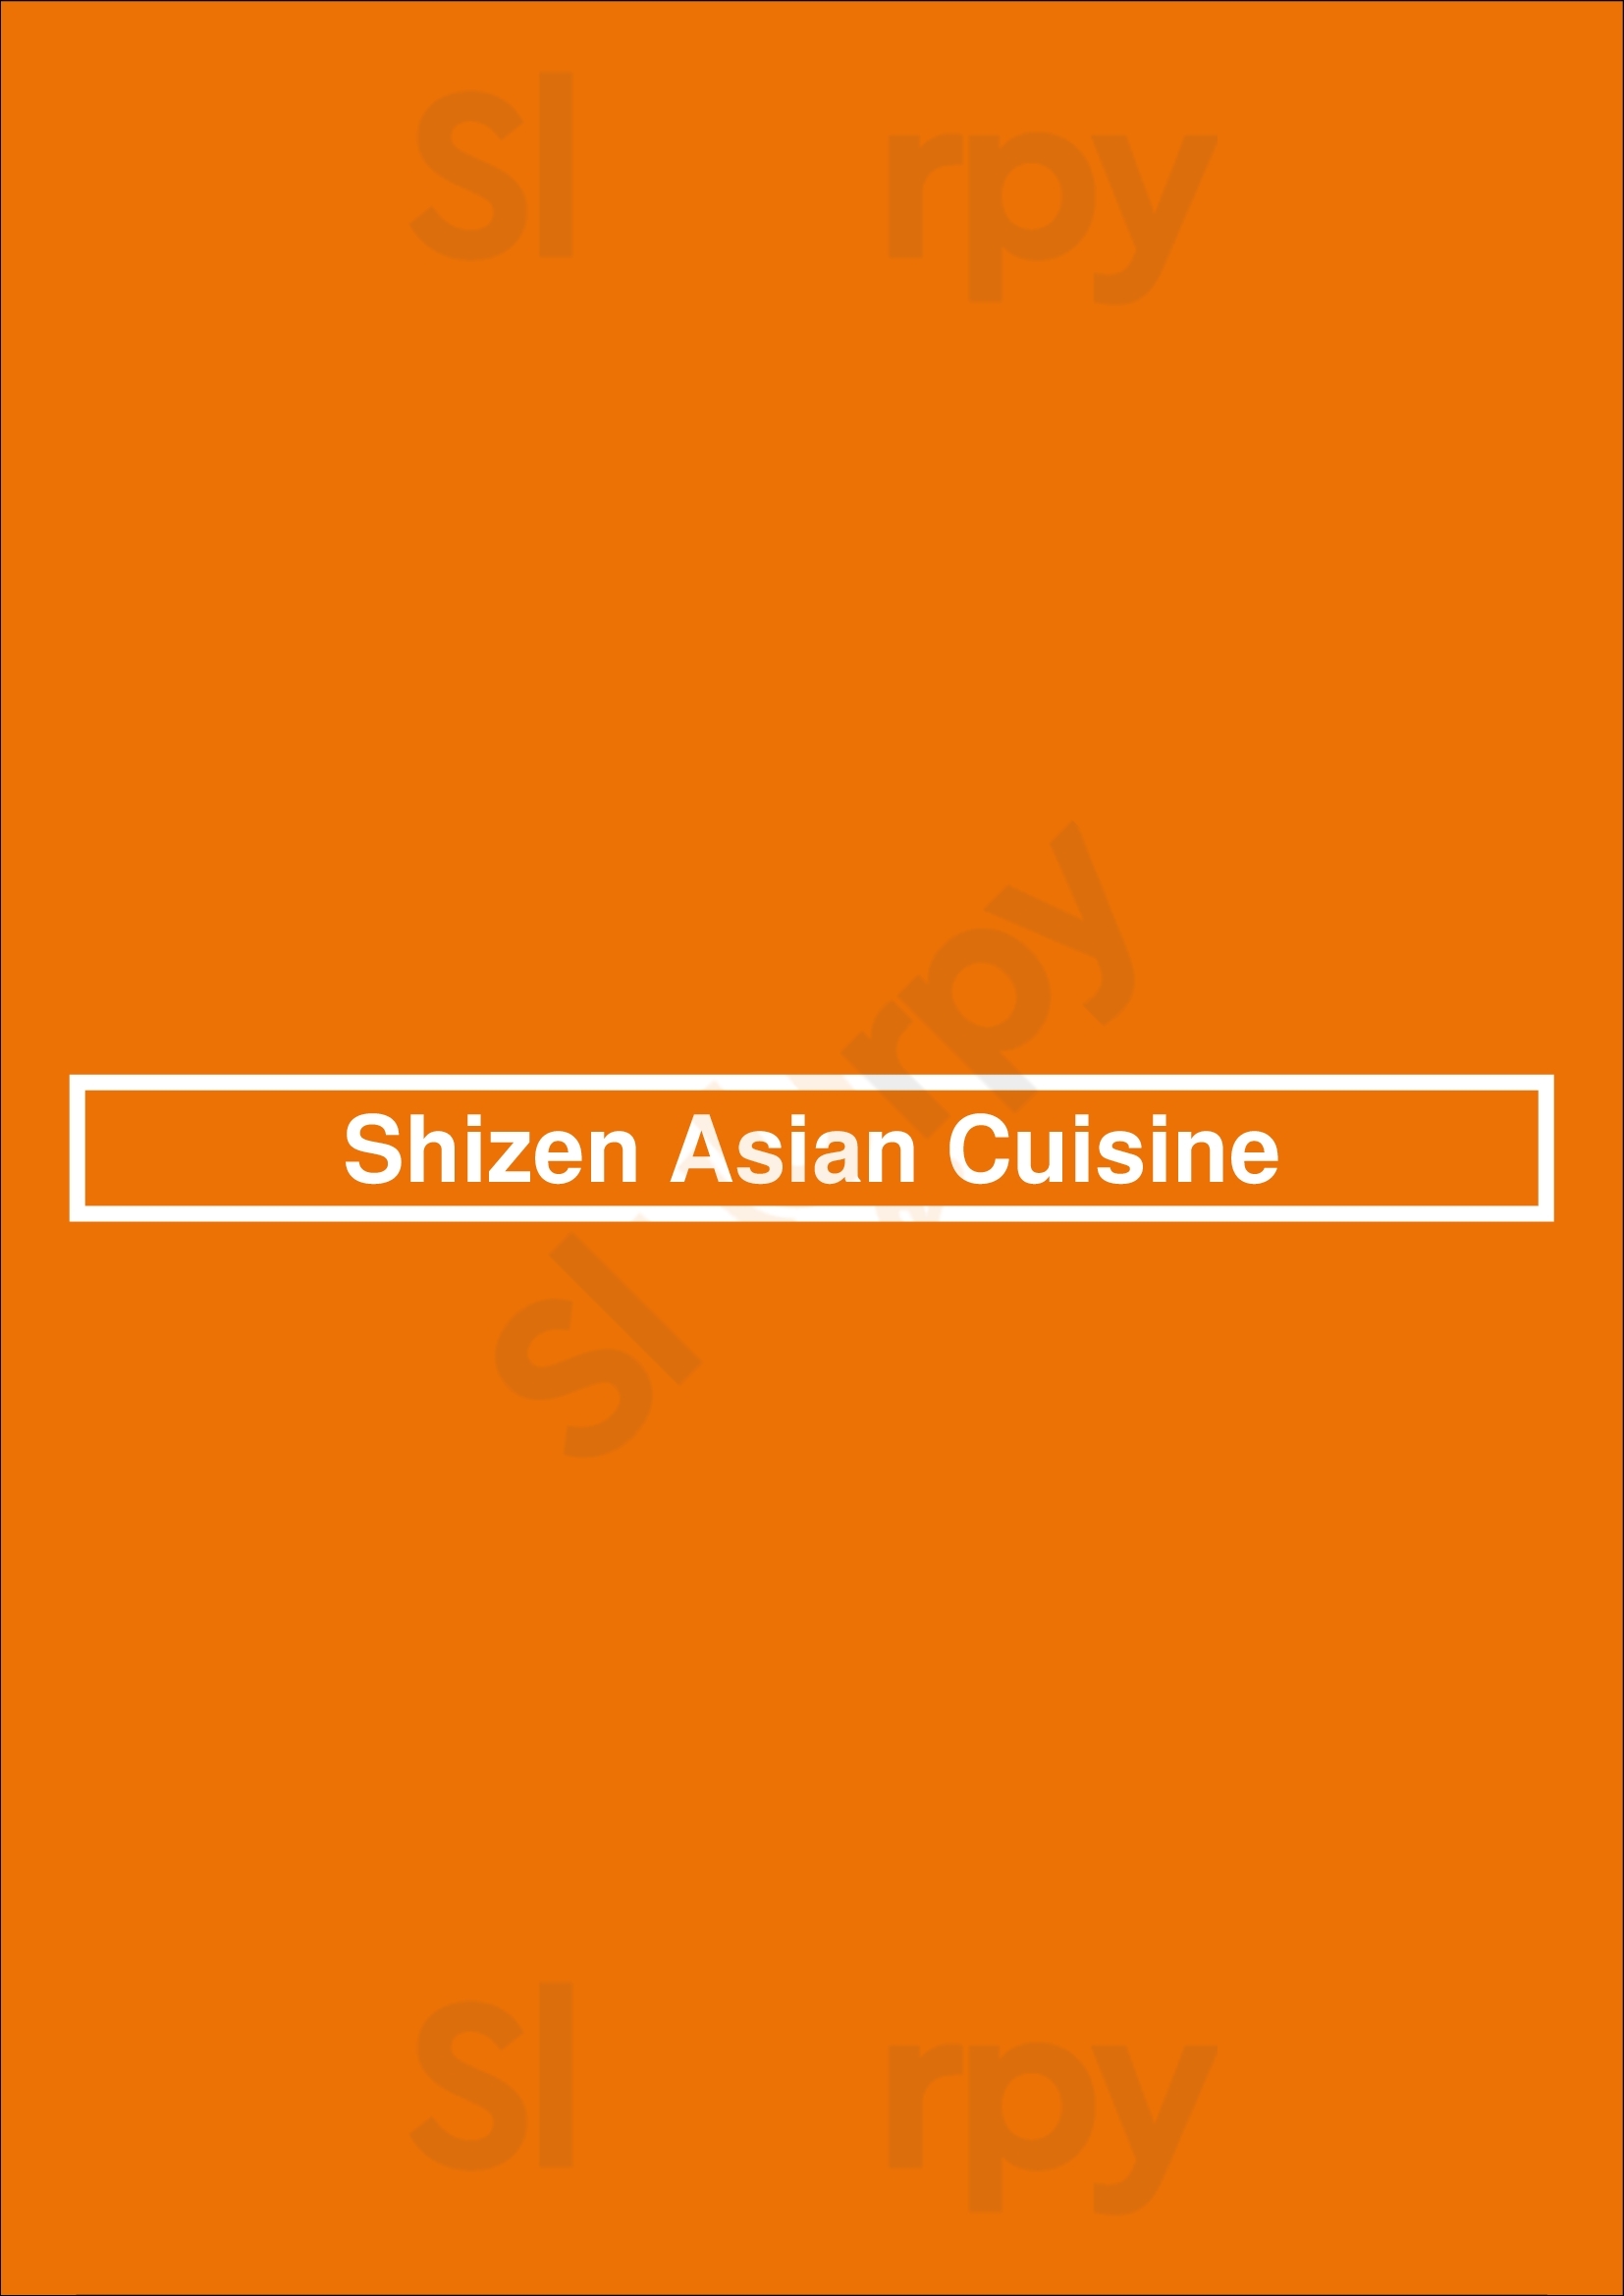 Shizen Asian Cuisine Den Bosch Menu - 1